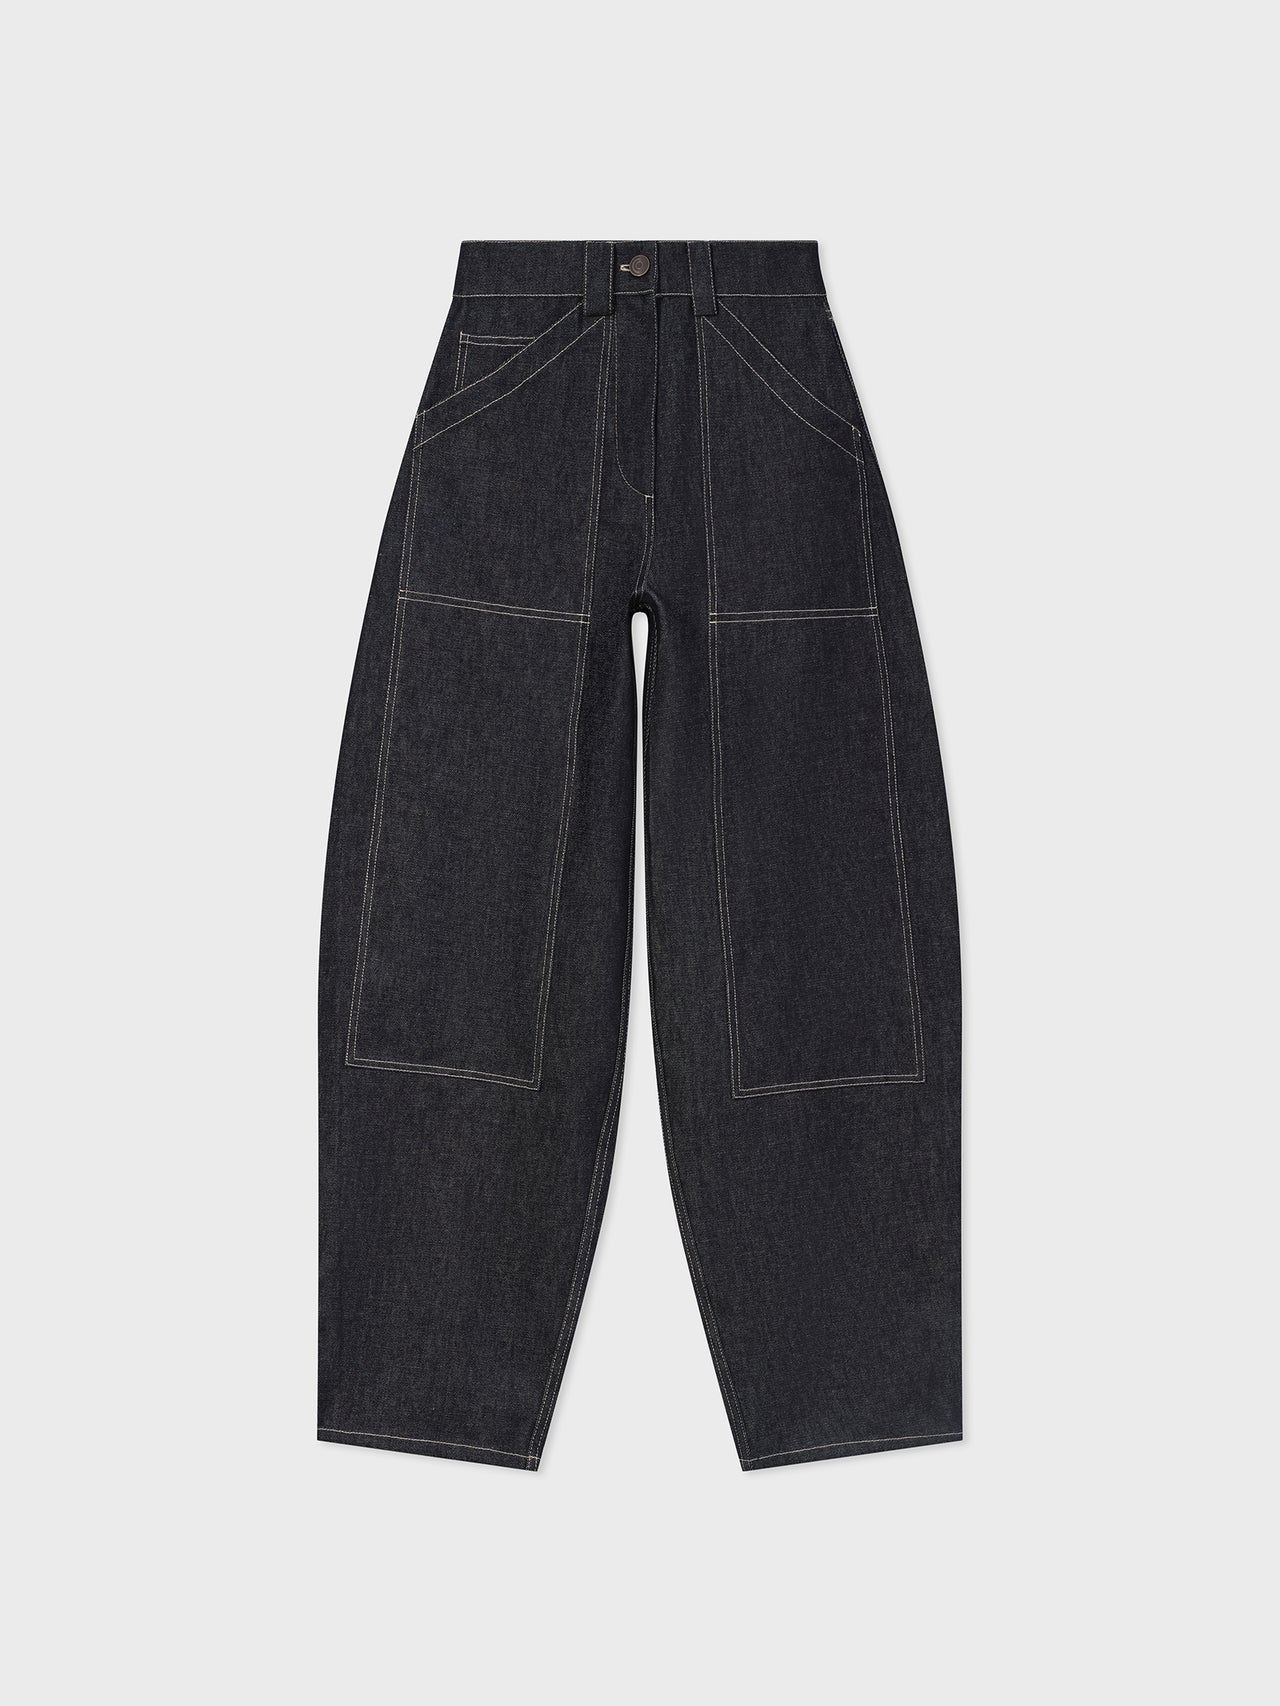 Workwear Patch Pocket Jean in Raw Denim - Indigo - CO